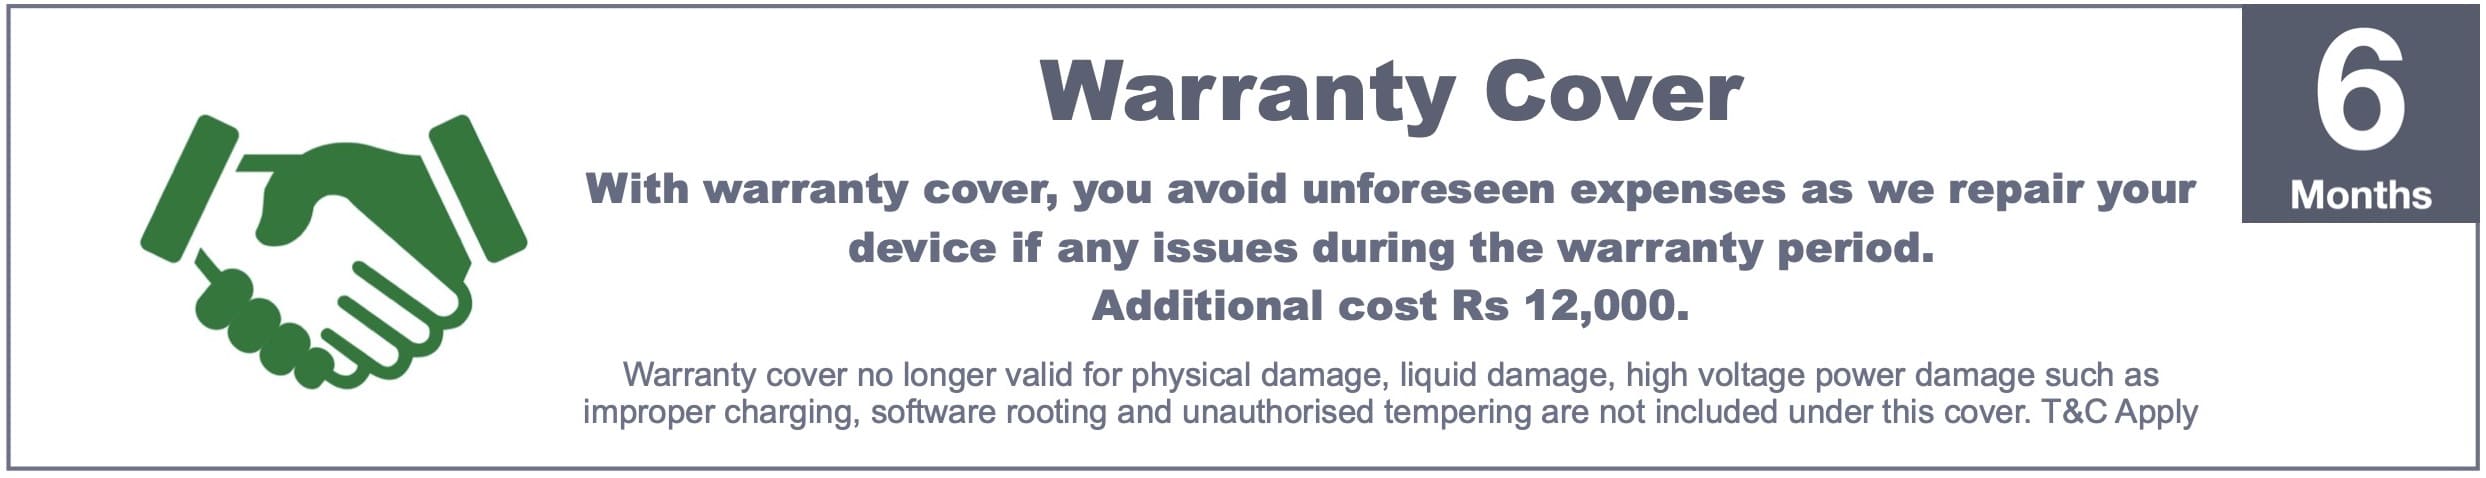 Warranty Cover 3 jpg